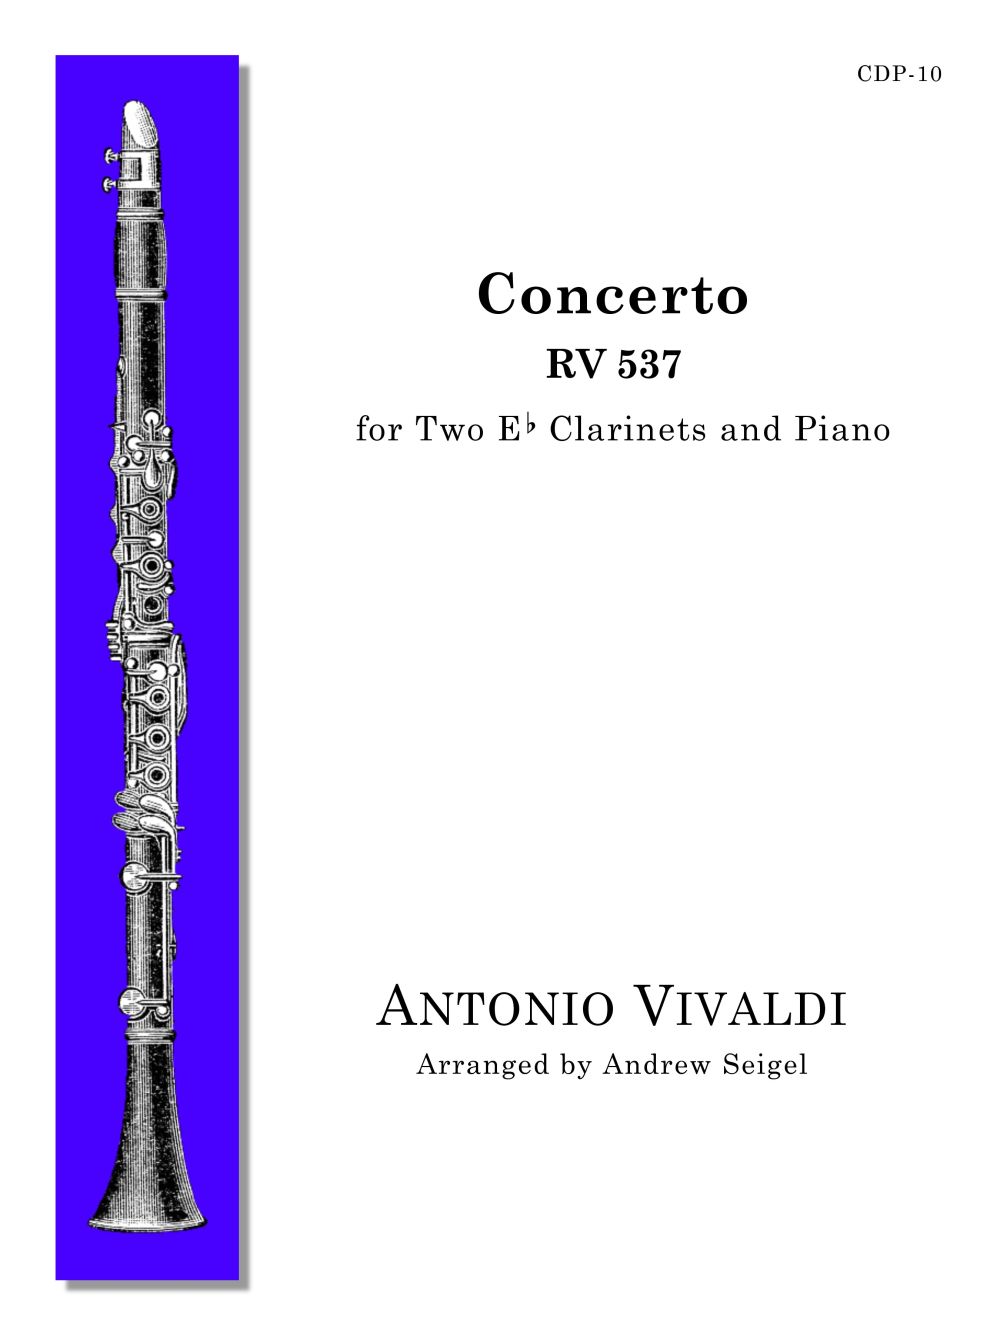 Concerto (VIVALDI ANTONIO)